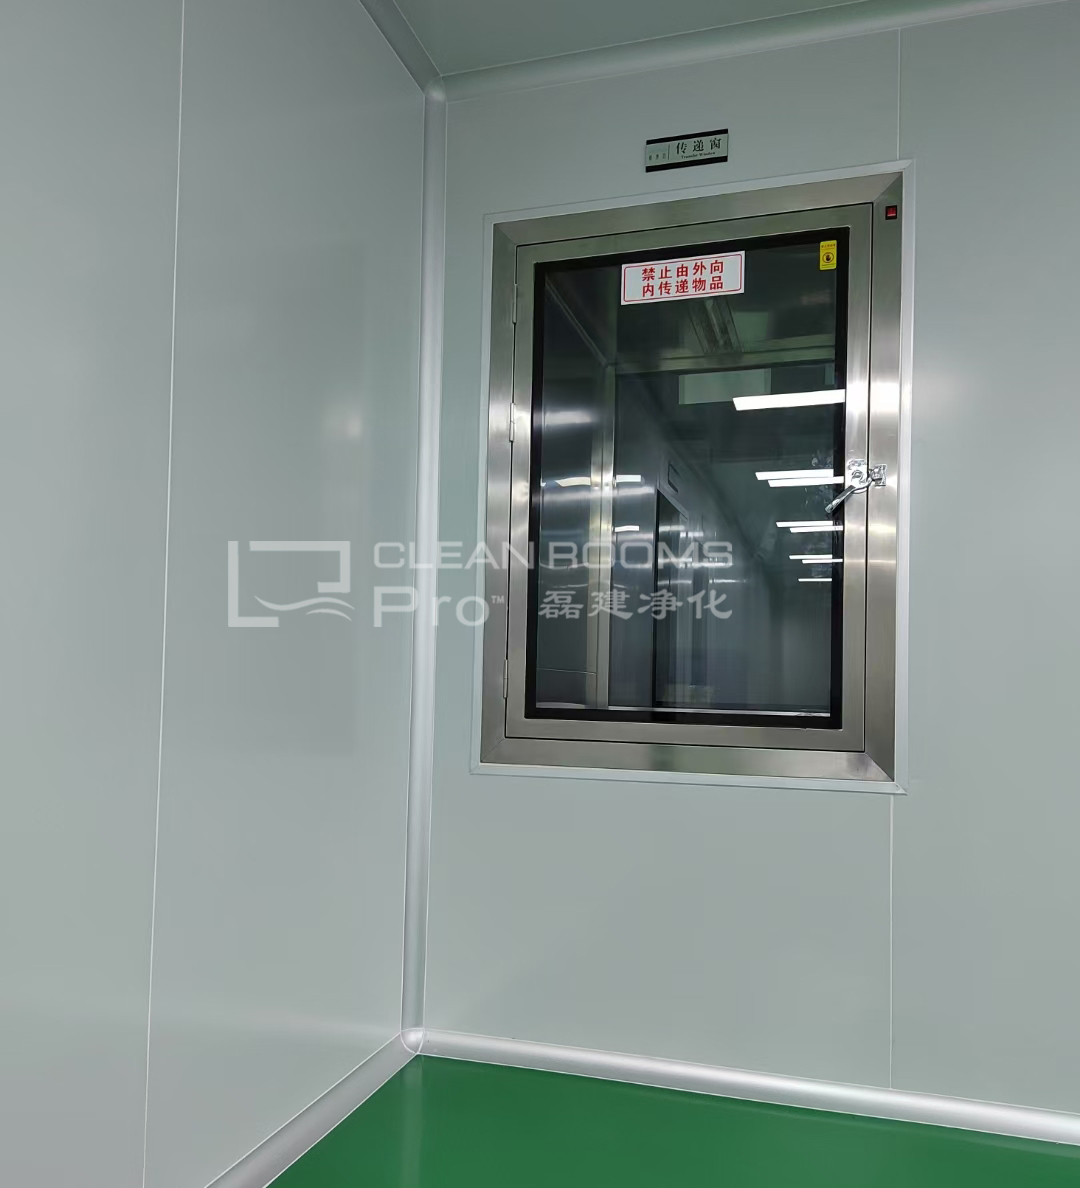 上海三类医疗器械美容针产品生产万级净化车间装修施工案例 (5)